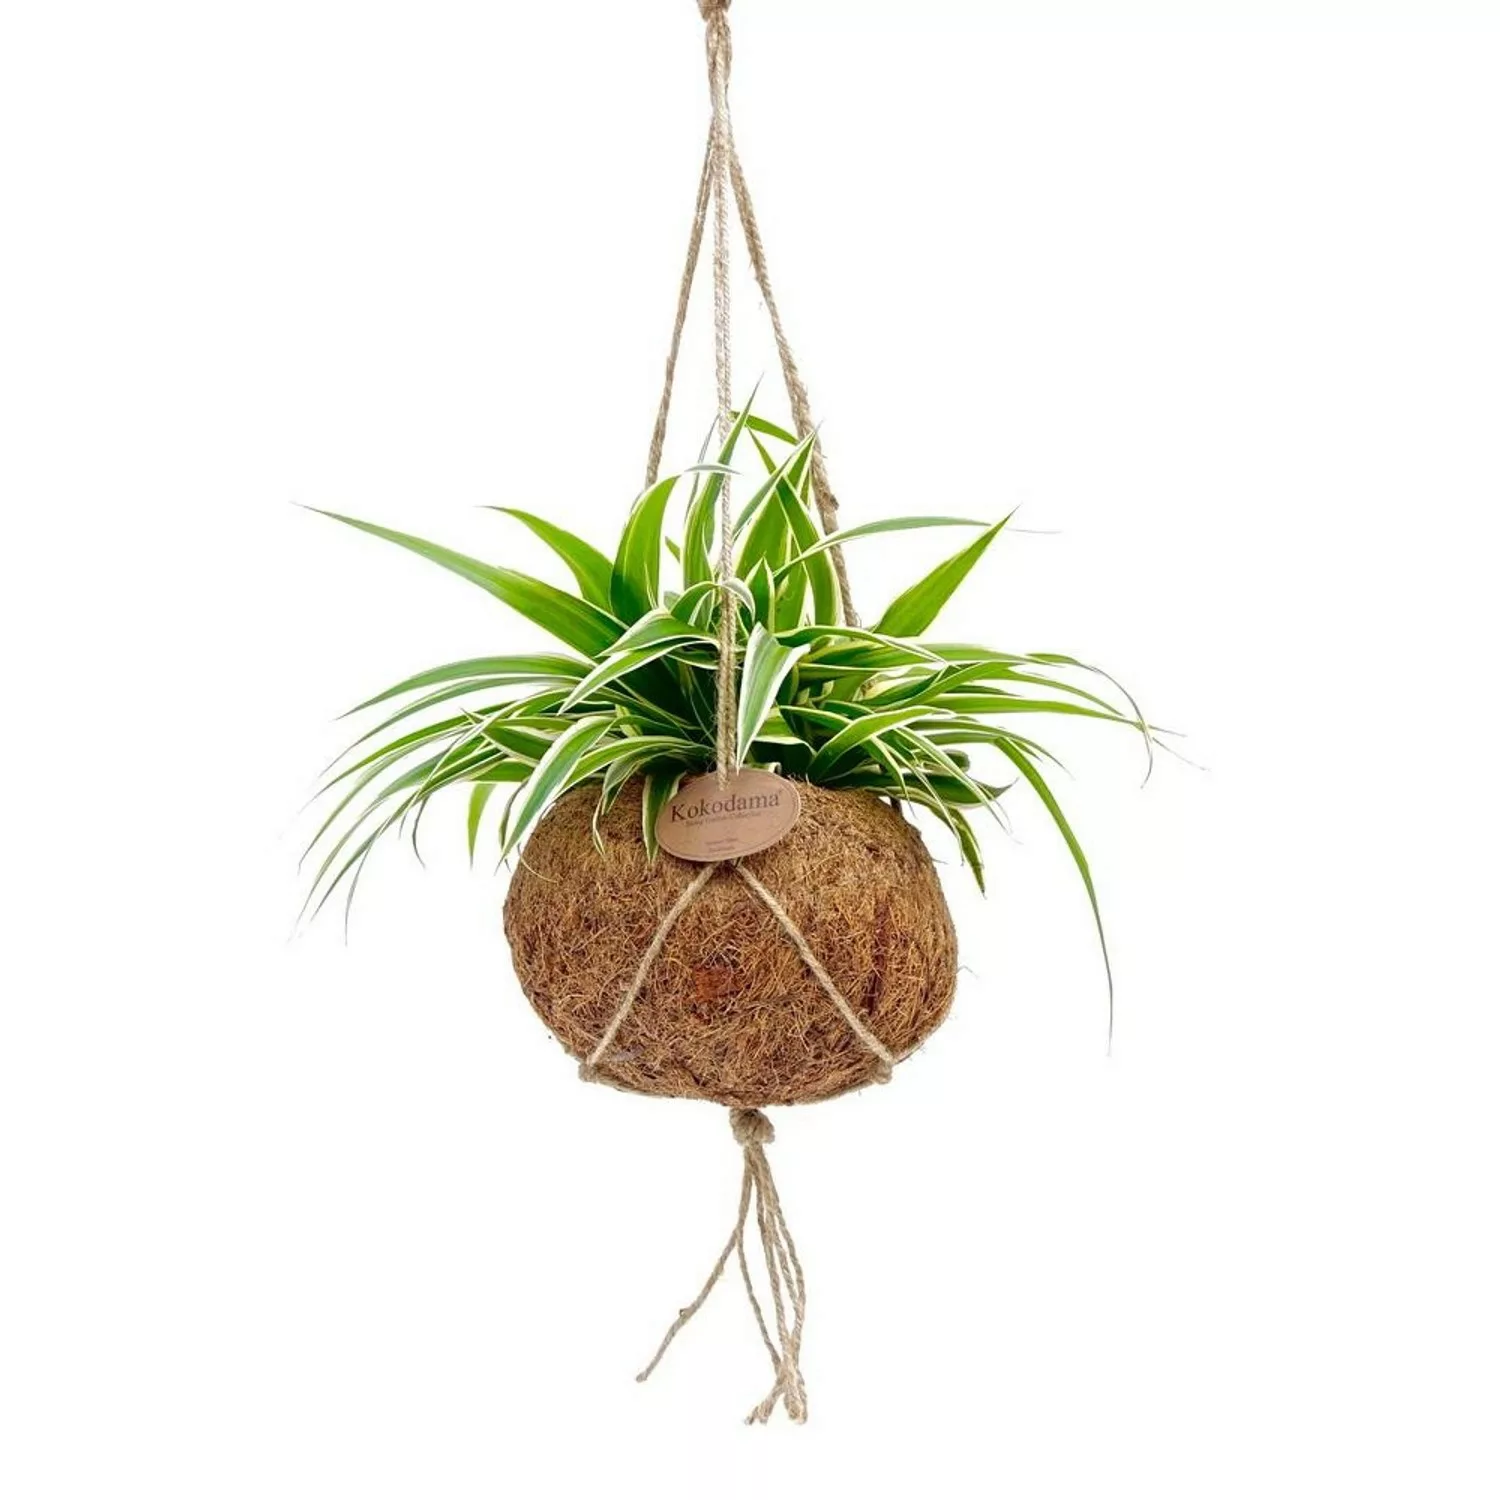 Exotenherz Kokodama Chlorophytum im Kokodamagefäß zum Hängen Grünlilie ca. günstig online kaufen